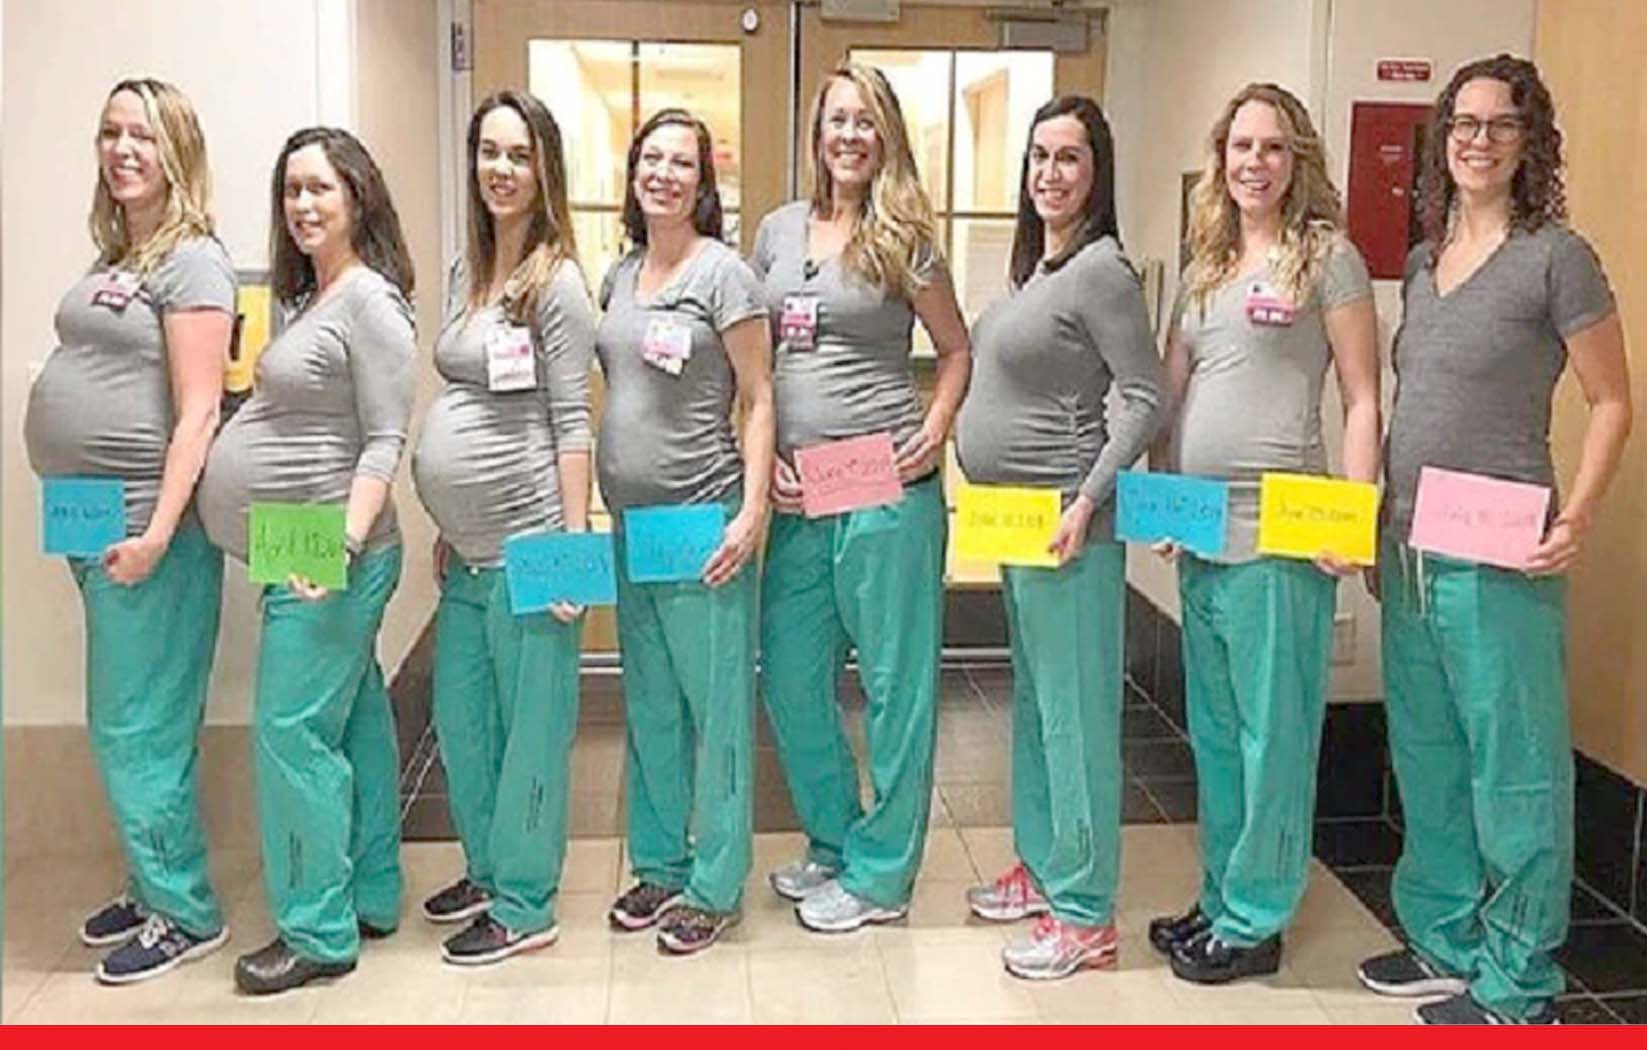 अमेरिका: अस्पताल में काम करने वाली ग्यारह नर्सें एक ही समय में गर्भवती